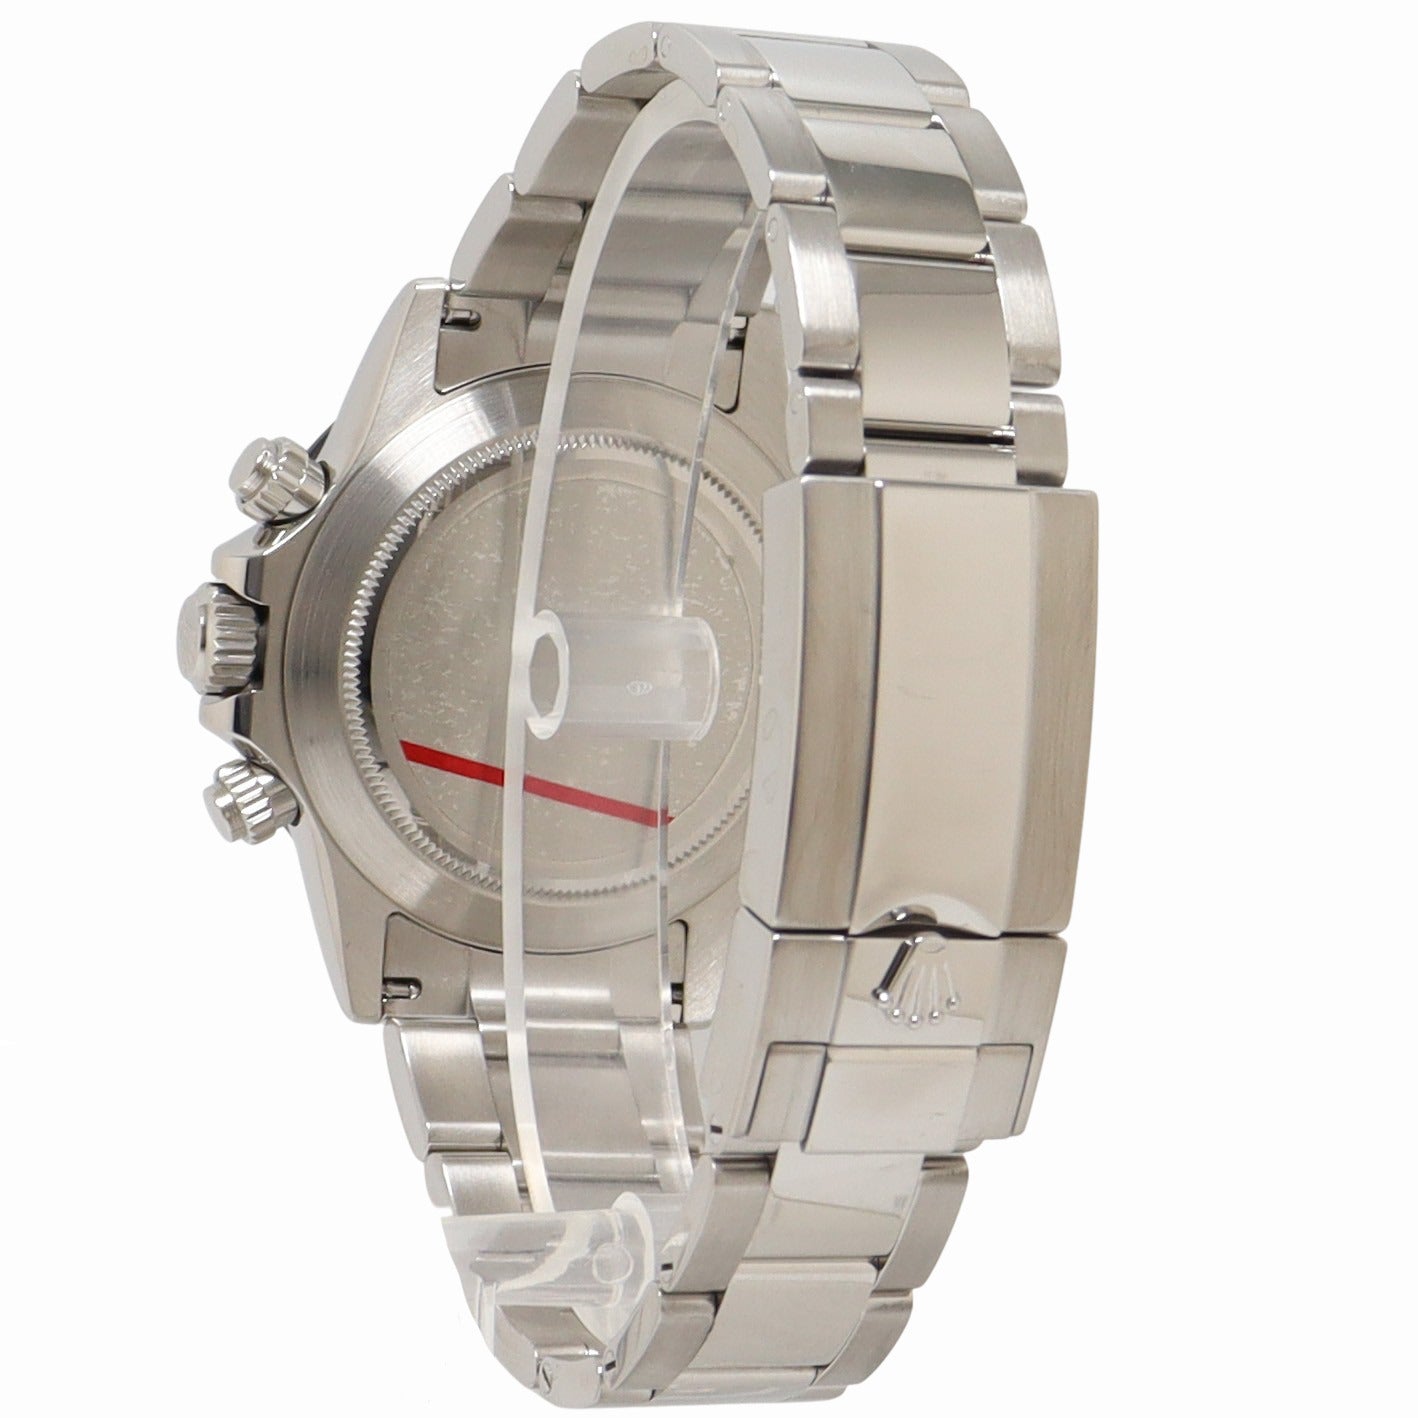 Rolex Daytona Stainless Steel 40mm Black Chronograph Dial Watch - Happy Jewelers Fine Jewelry Lifetime Warranty